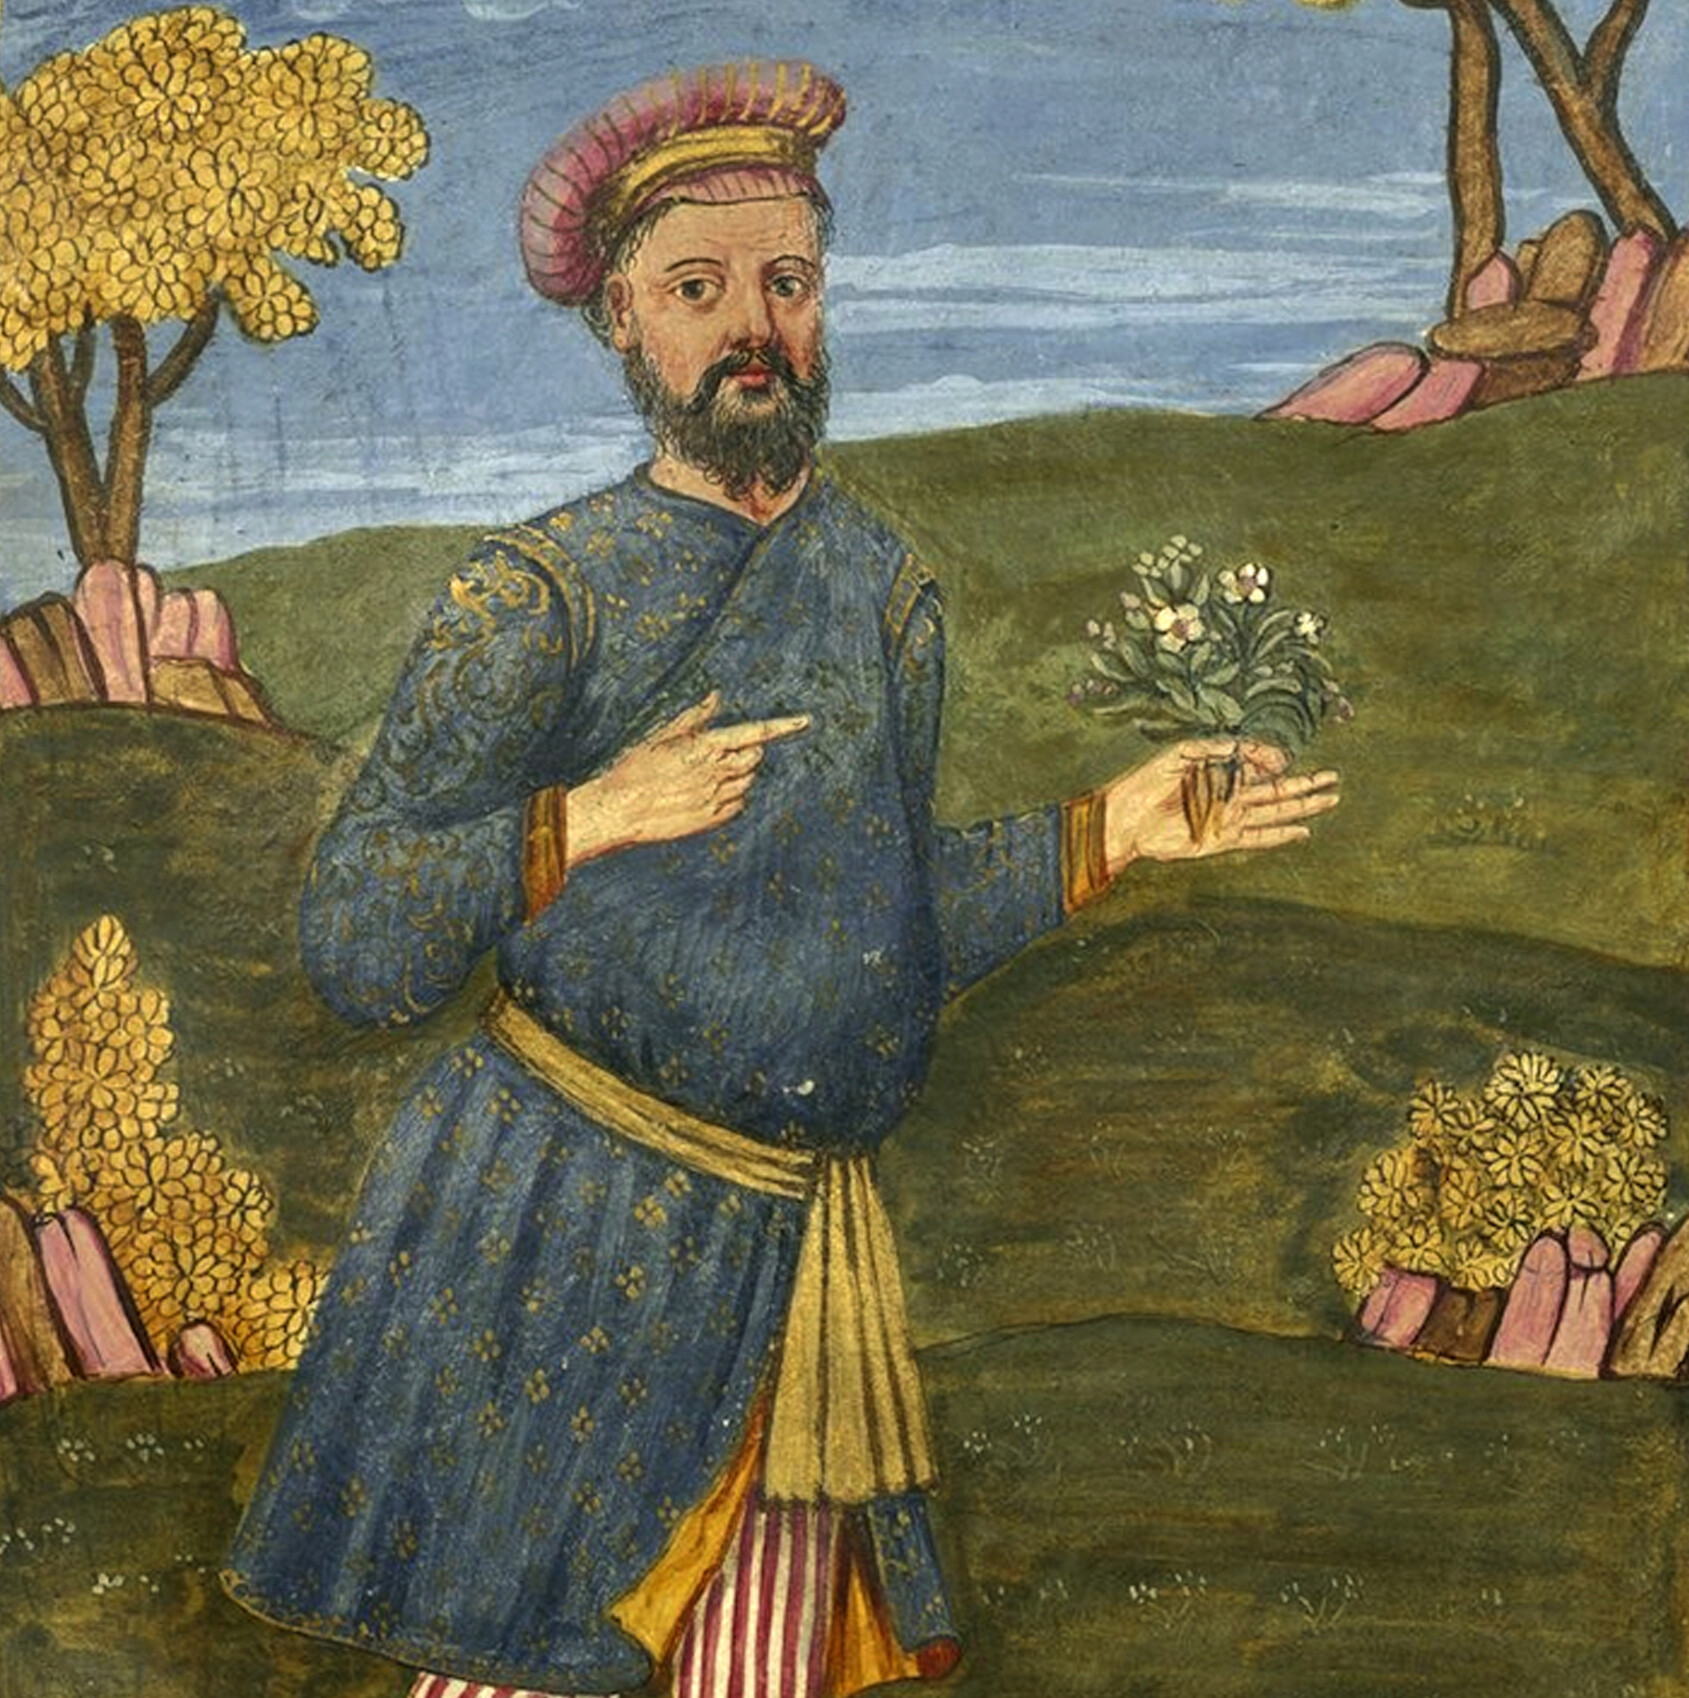 Miniature, Libro rosso, 'La Storia do Mogor', Niccolò Manucci, venezia, india